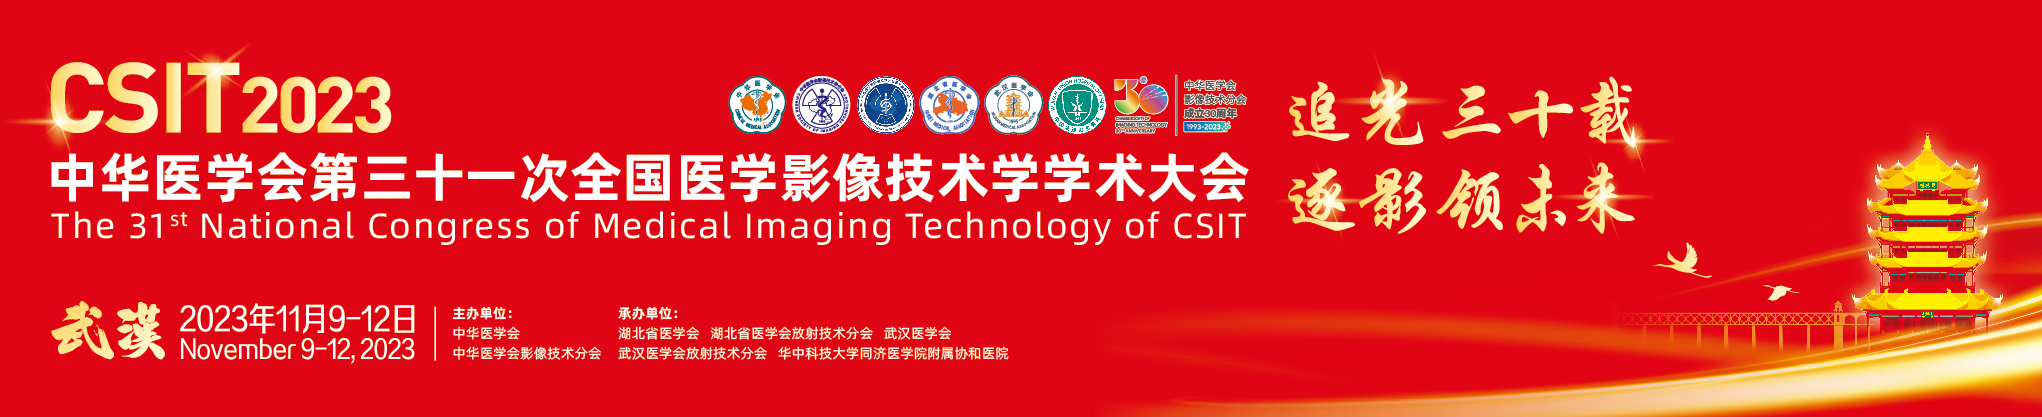 中华医学会第三十一次全国医学影像技术学学术大会